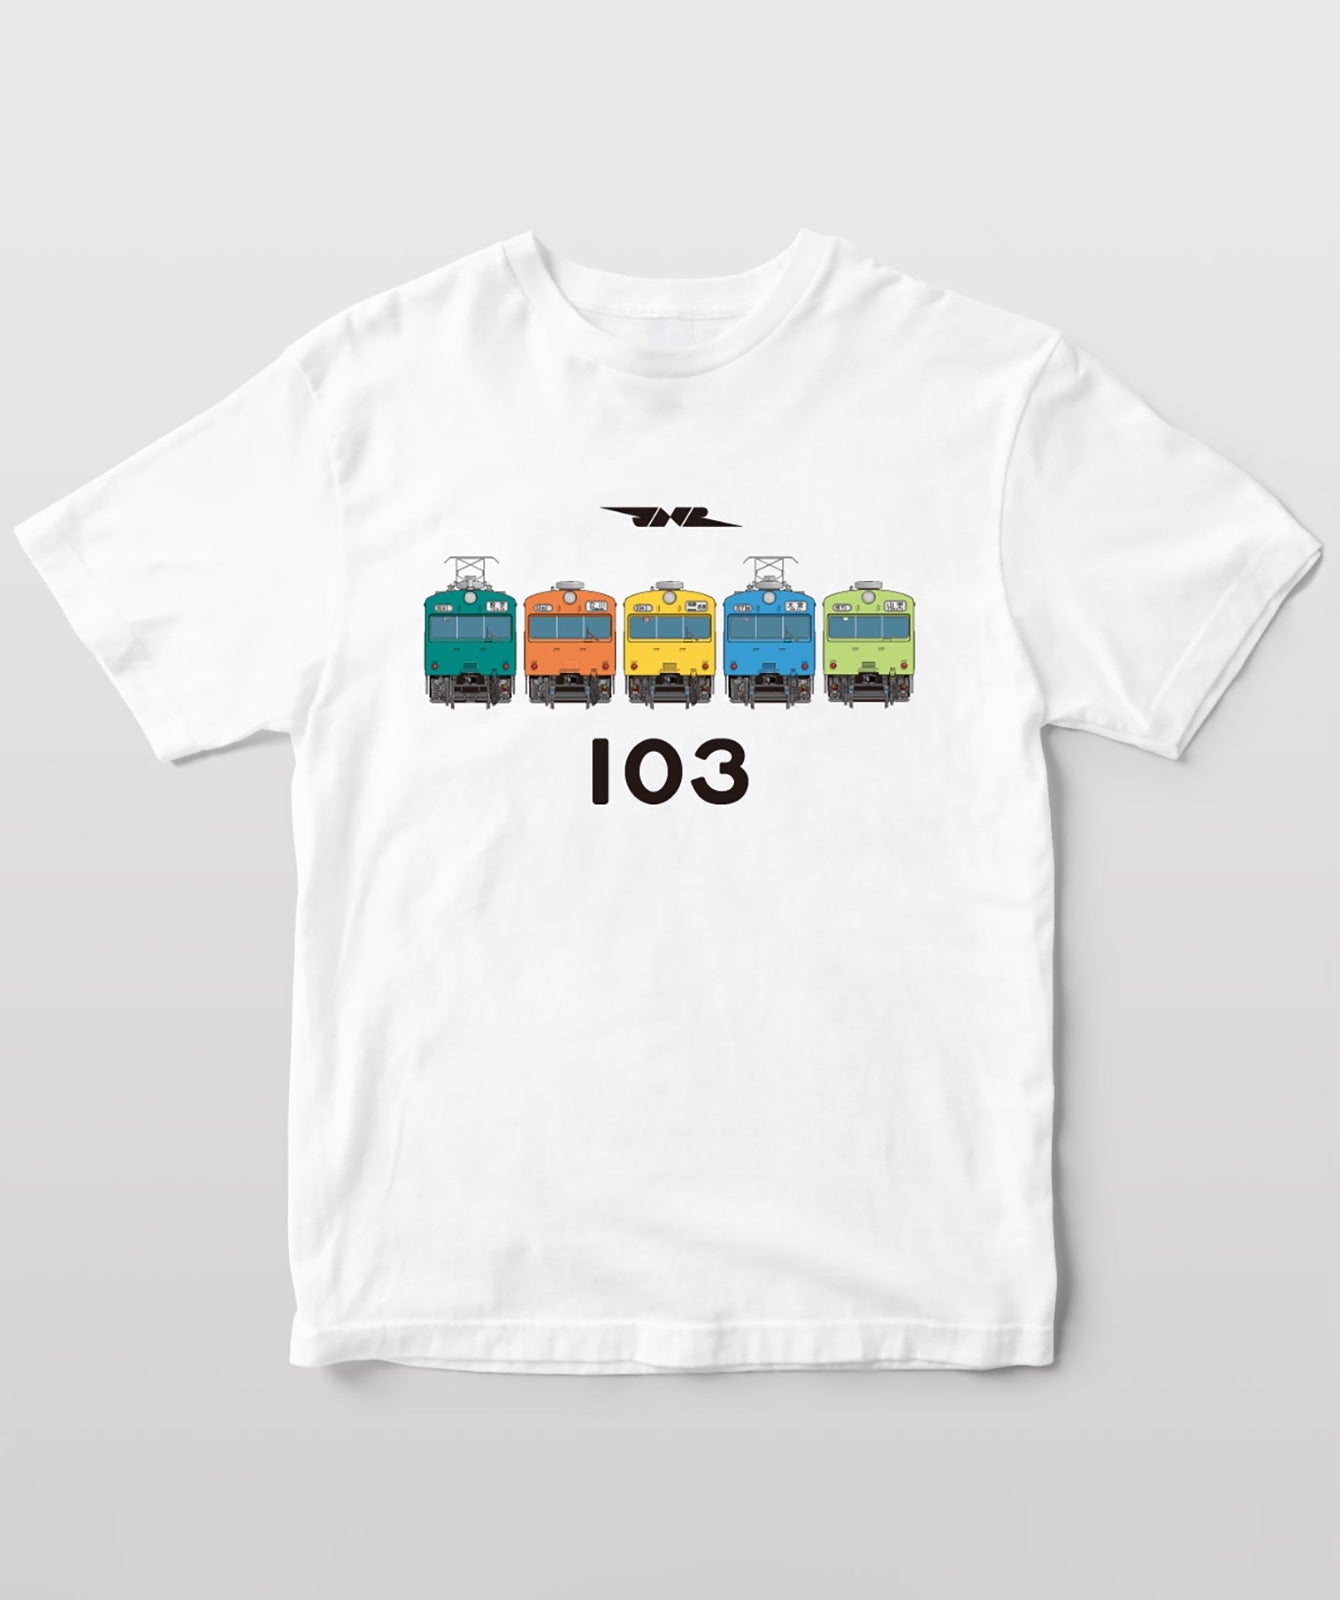 電車の顔図鑑Tシャツ 国鉄型103系電車5色 TypeA